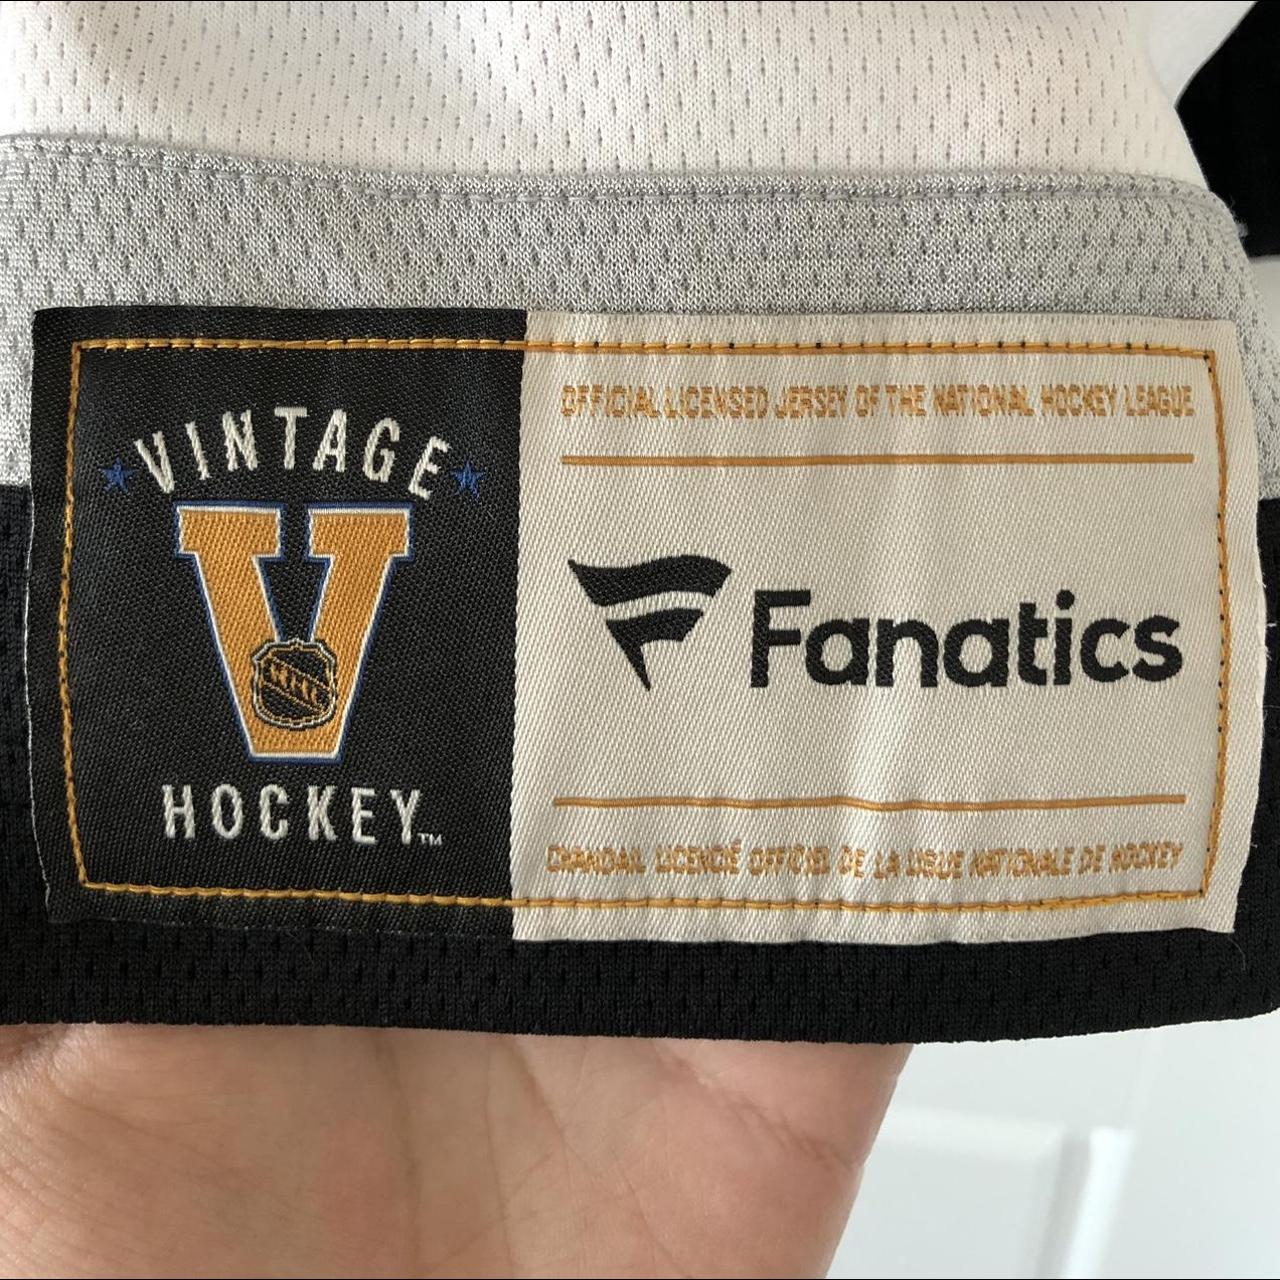 Fanatics NHL LA Kings Women's Hockey Jersey Gray - Depop